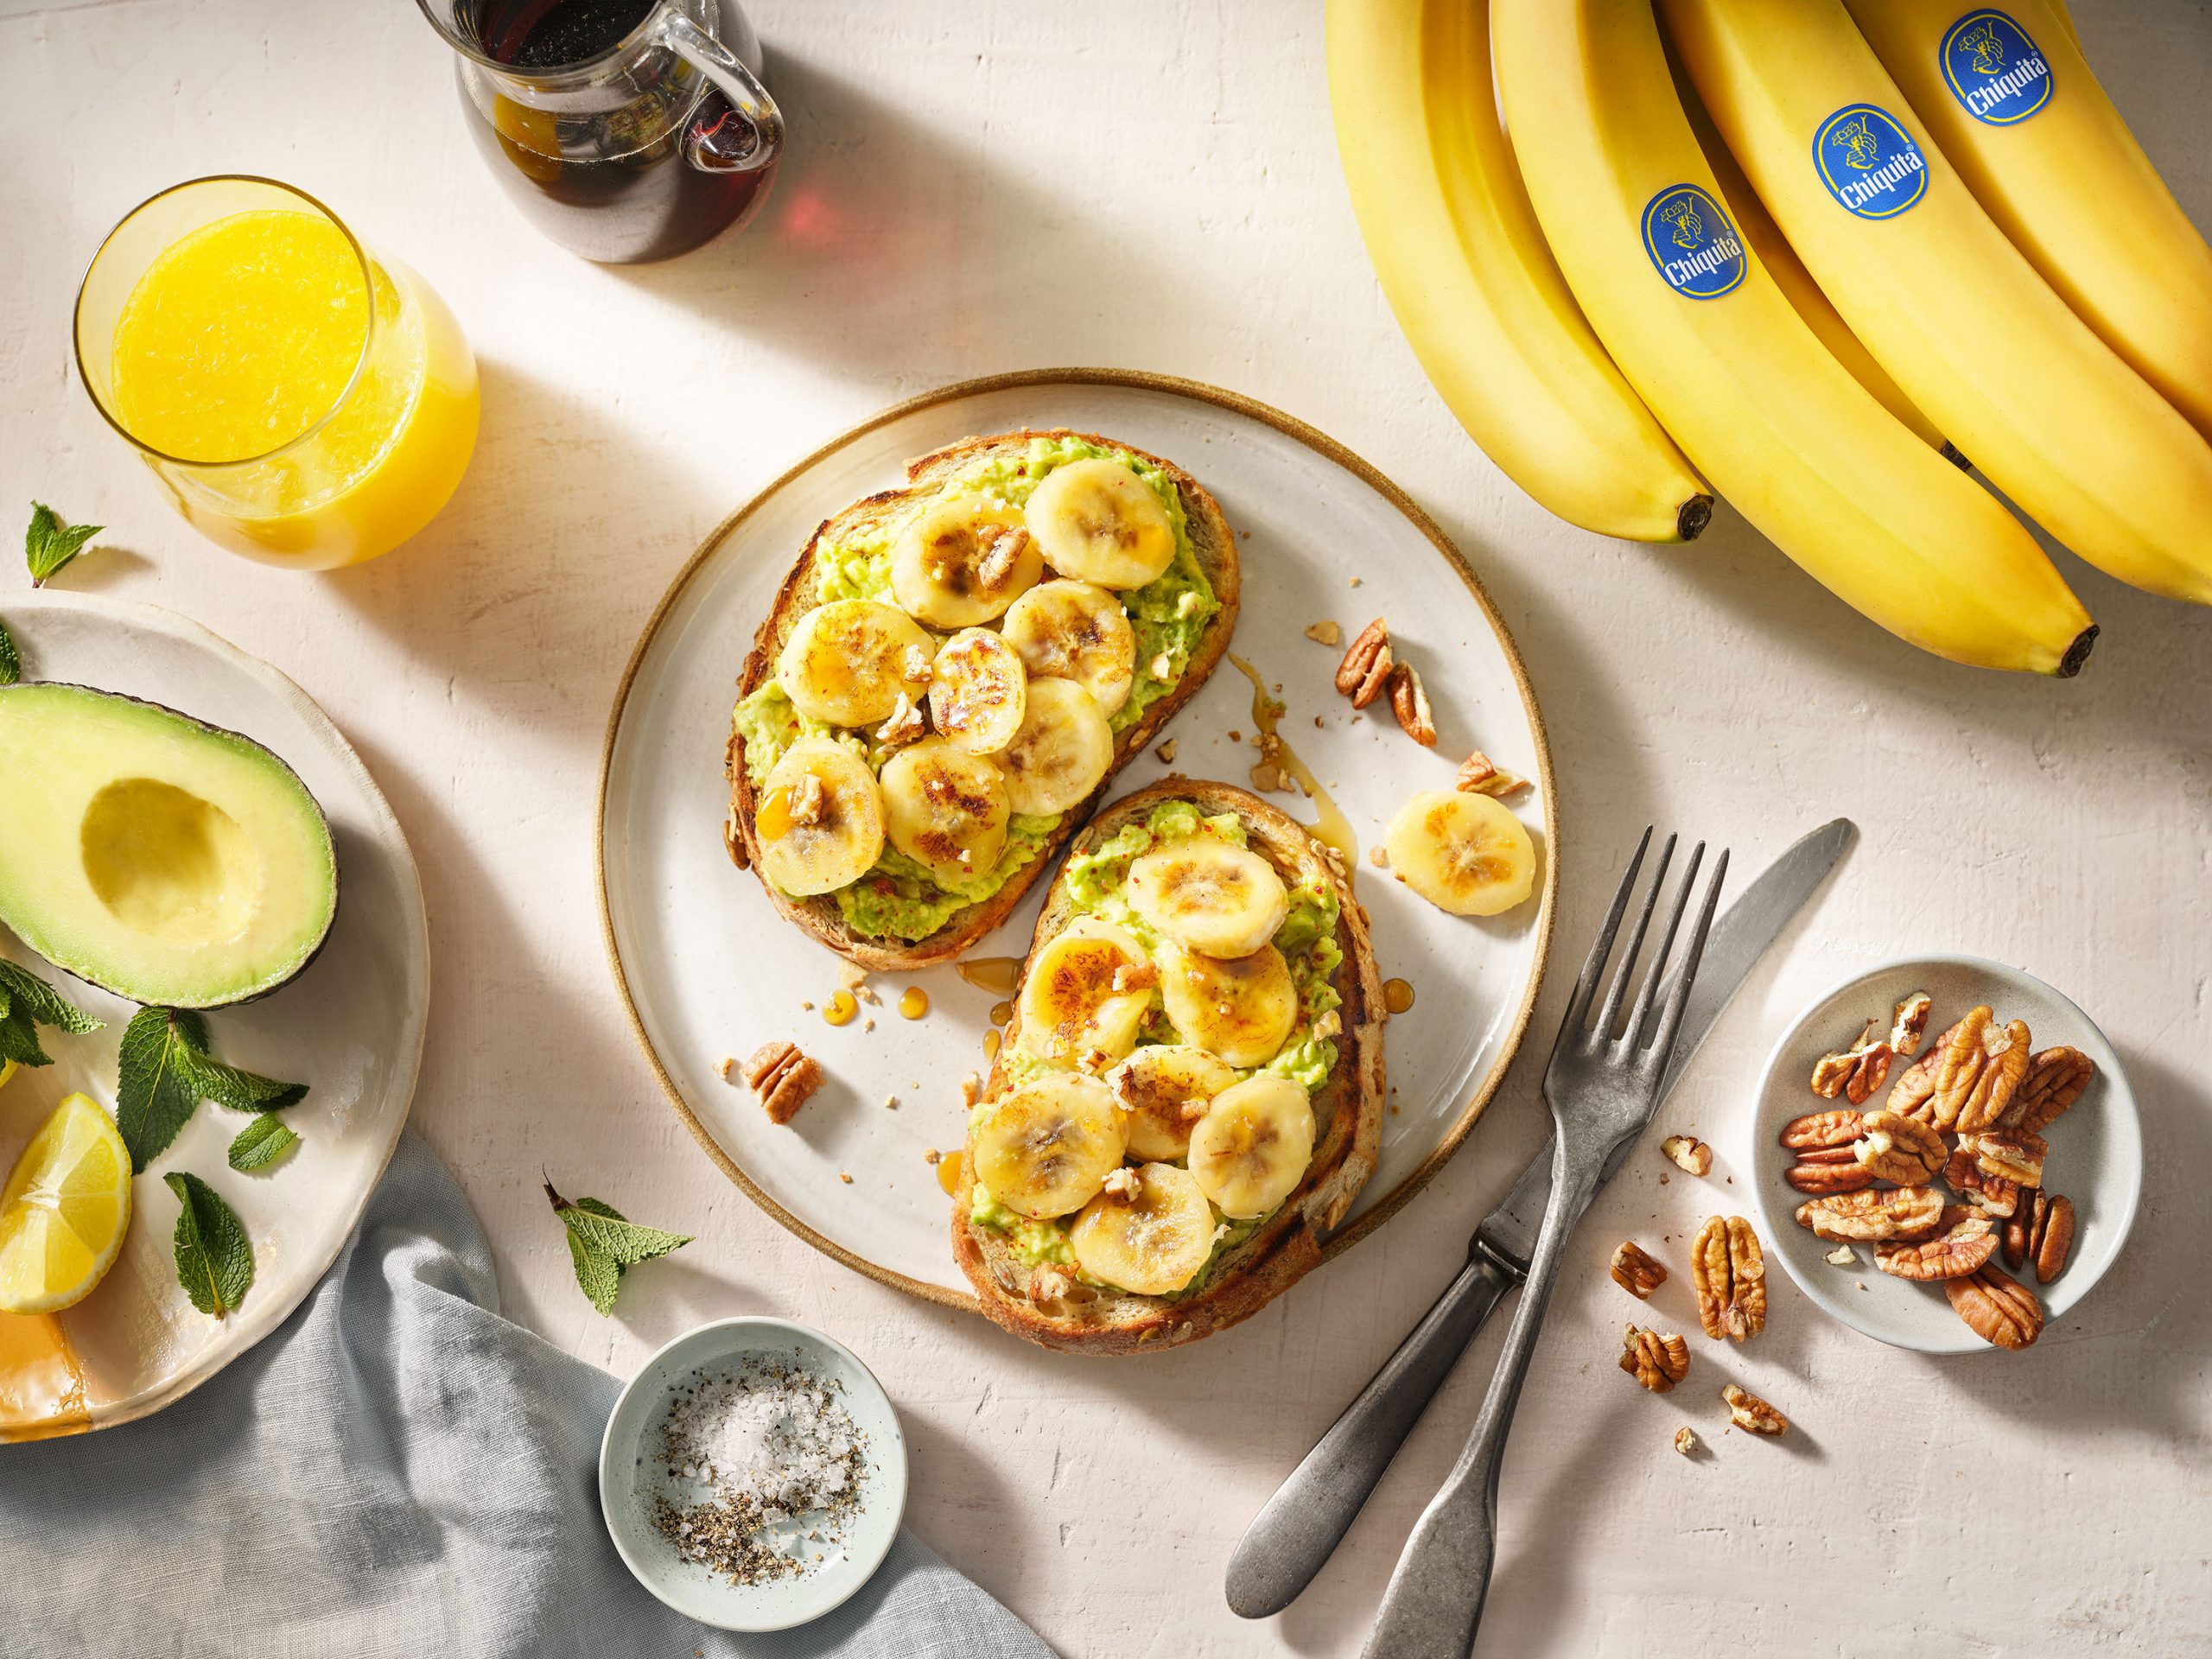 Toast per la prima colazione con avocado e banana Chiquita